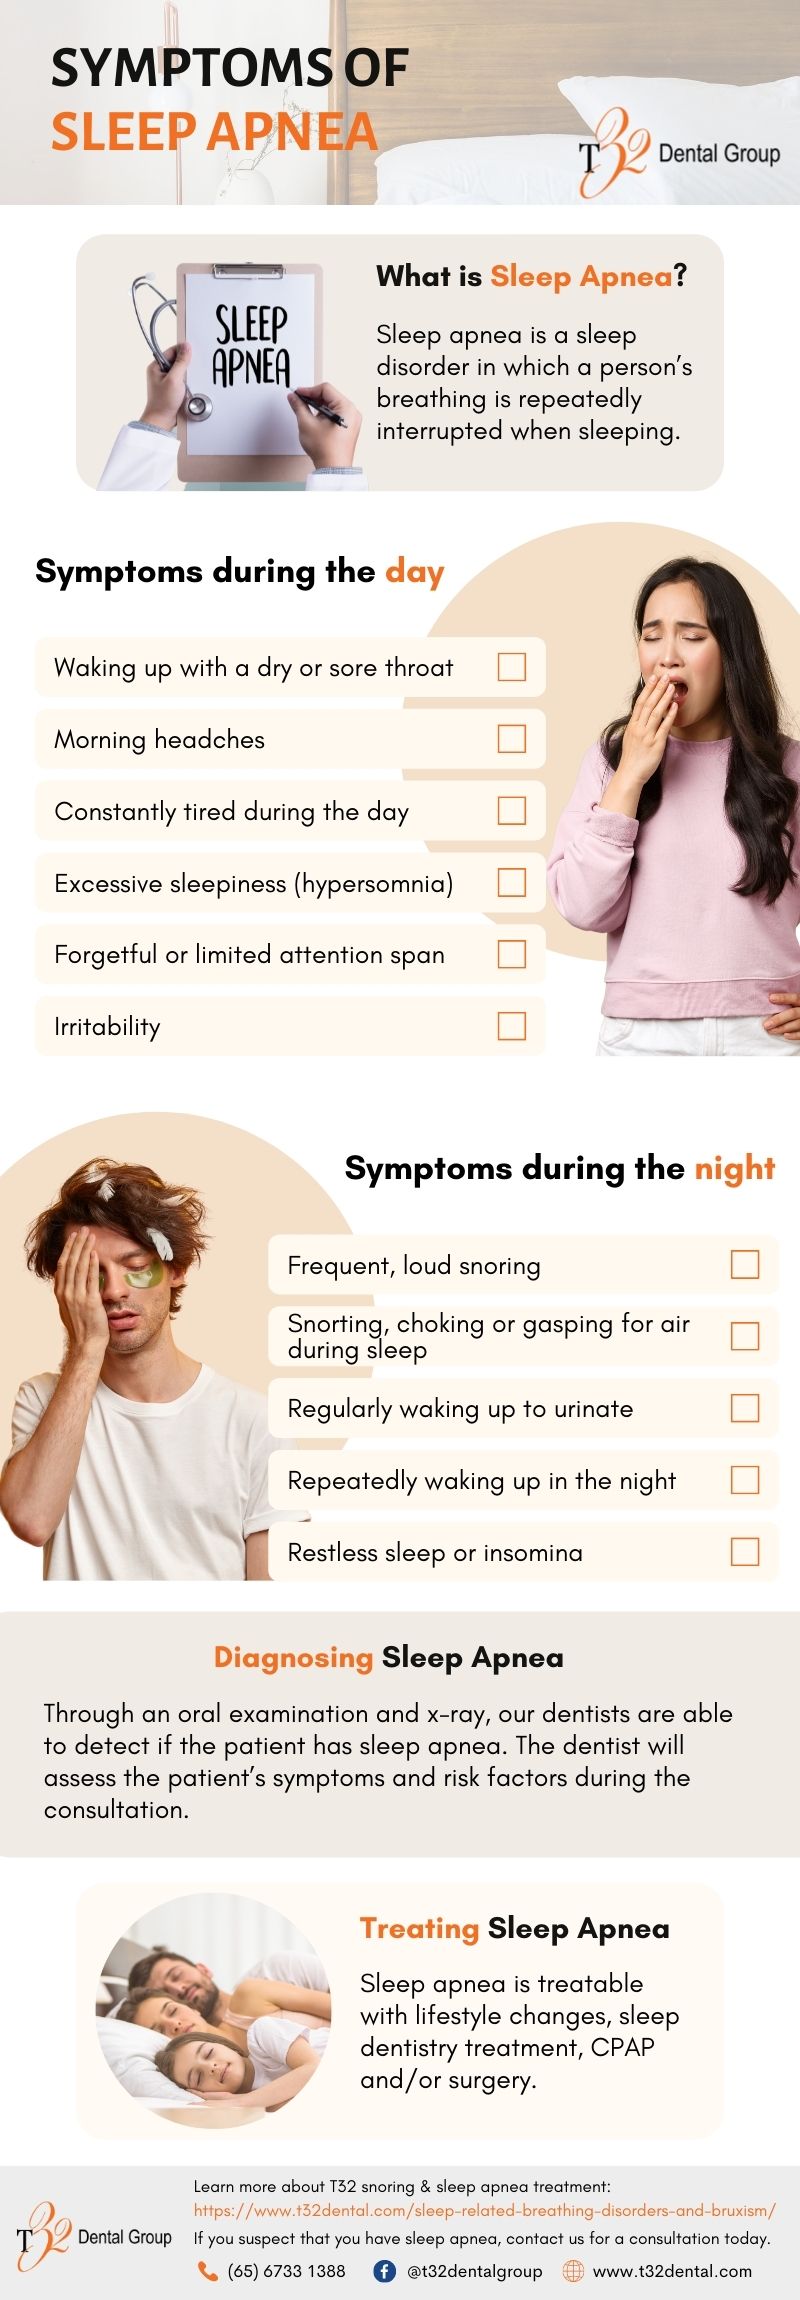 Symptoms of Sleep Apnea and How to Treat It infographic